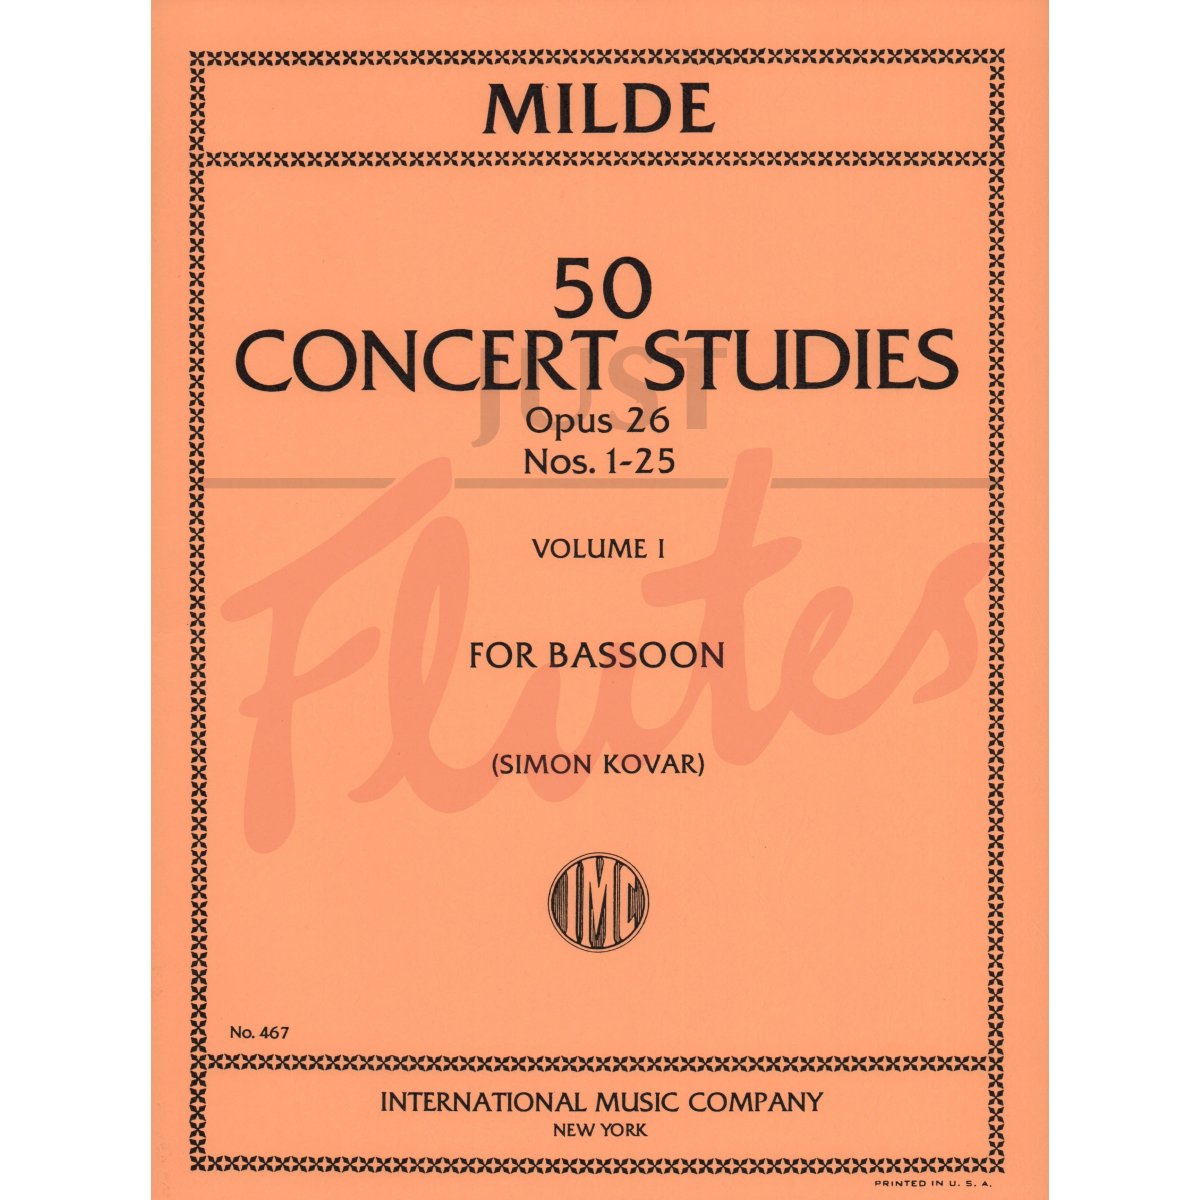 50 Concert Studies for Bassoon